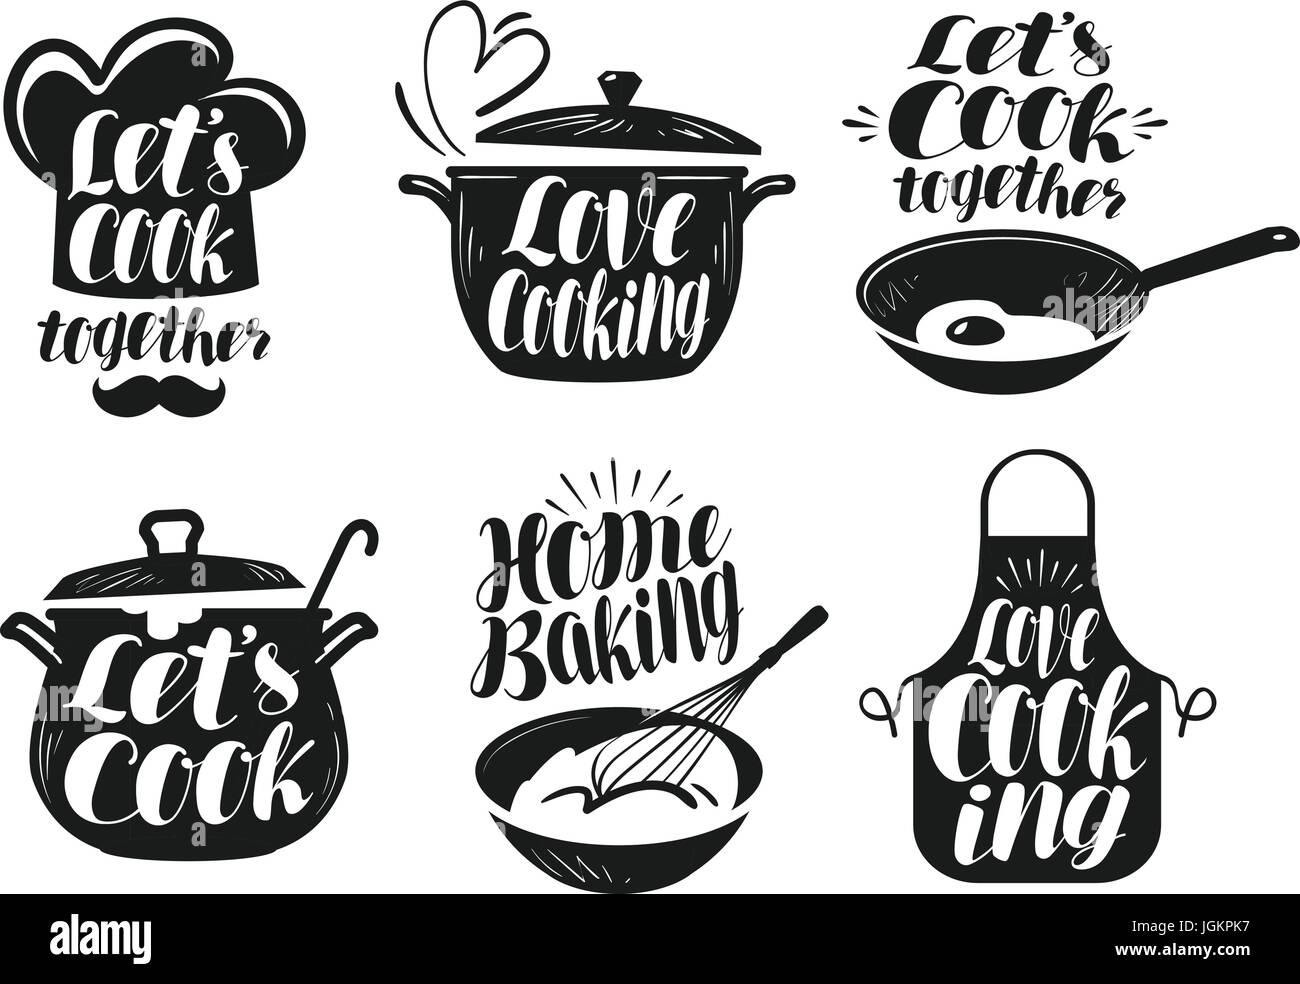 Kochen, Kochen, Küche-Beschriftung-Set. Koch, Koch, Küche Geschirr Symbol oder Logo. Handgeschriebene Schrift, Kalligraphie-Vektor-illustration Stock Vektor